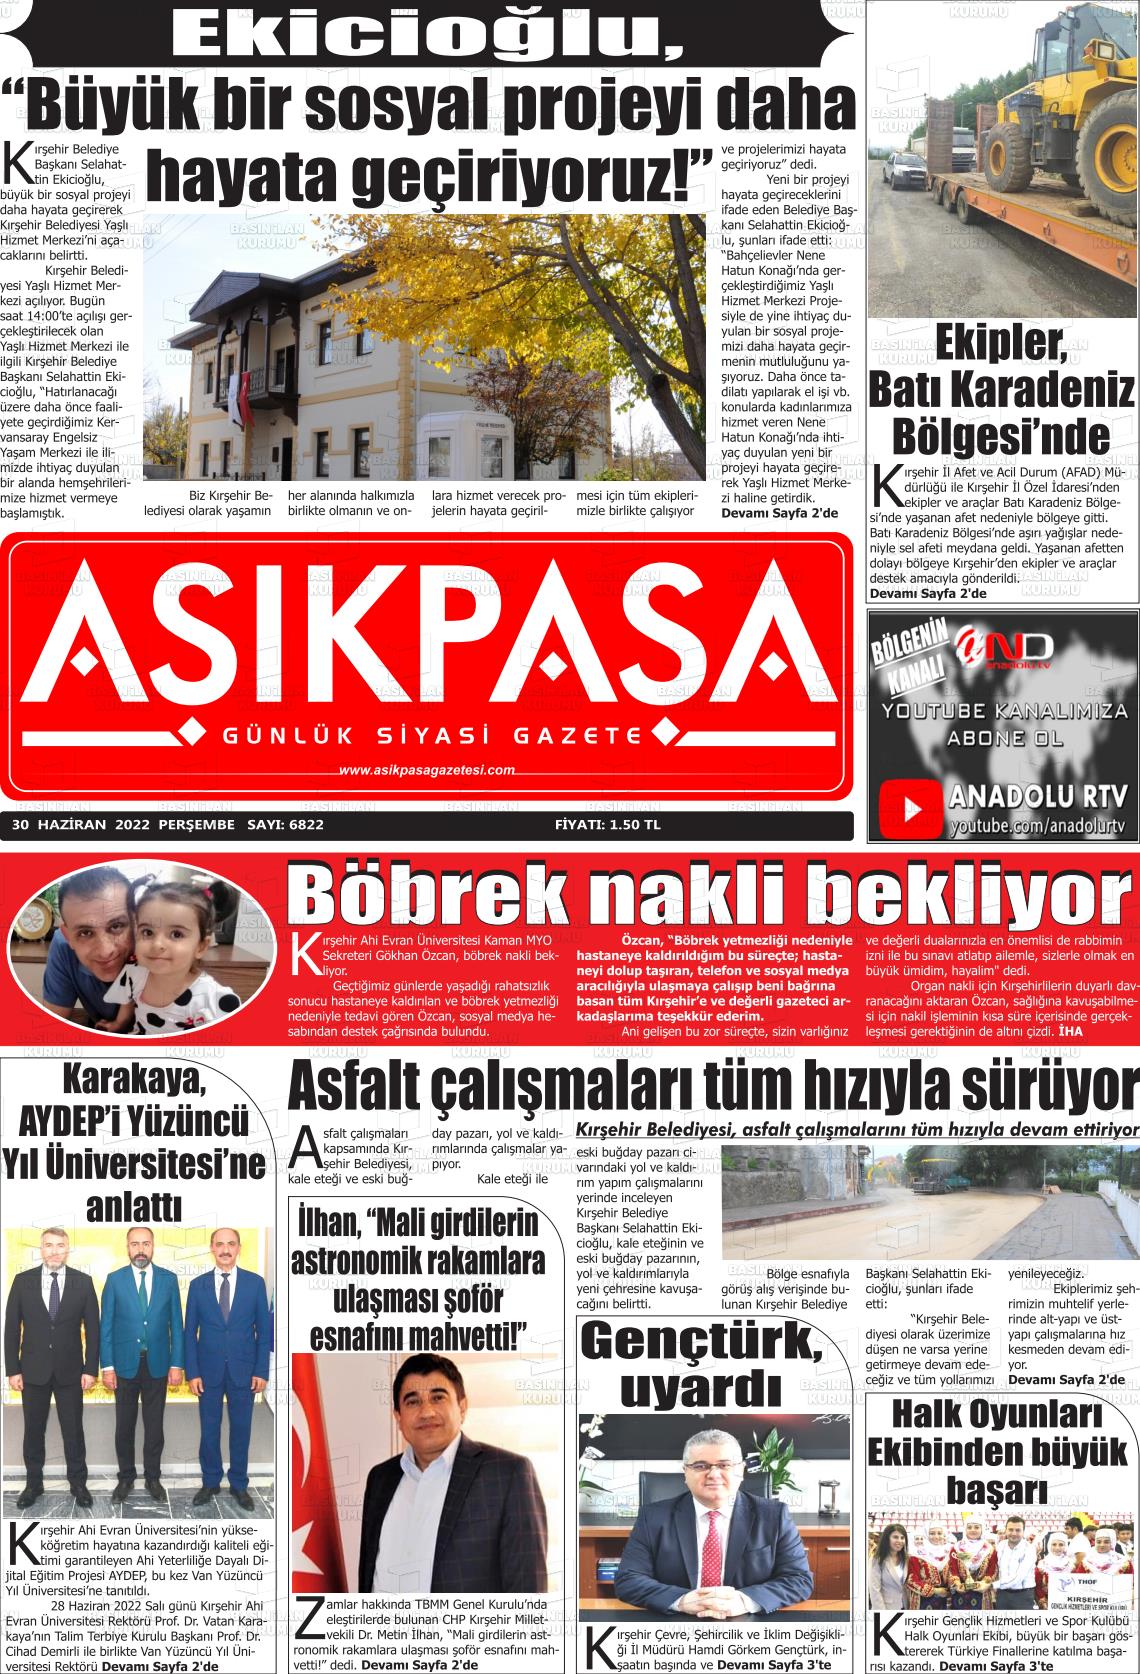 02 Temmuz 2022 Aşik Paşa Gazete Manşeti